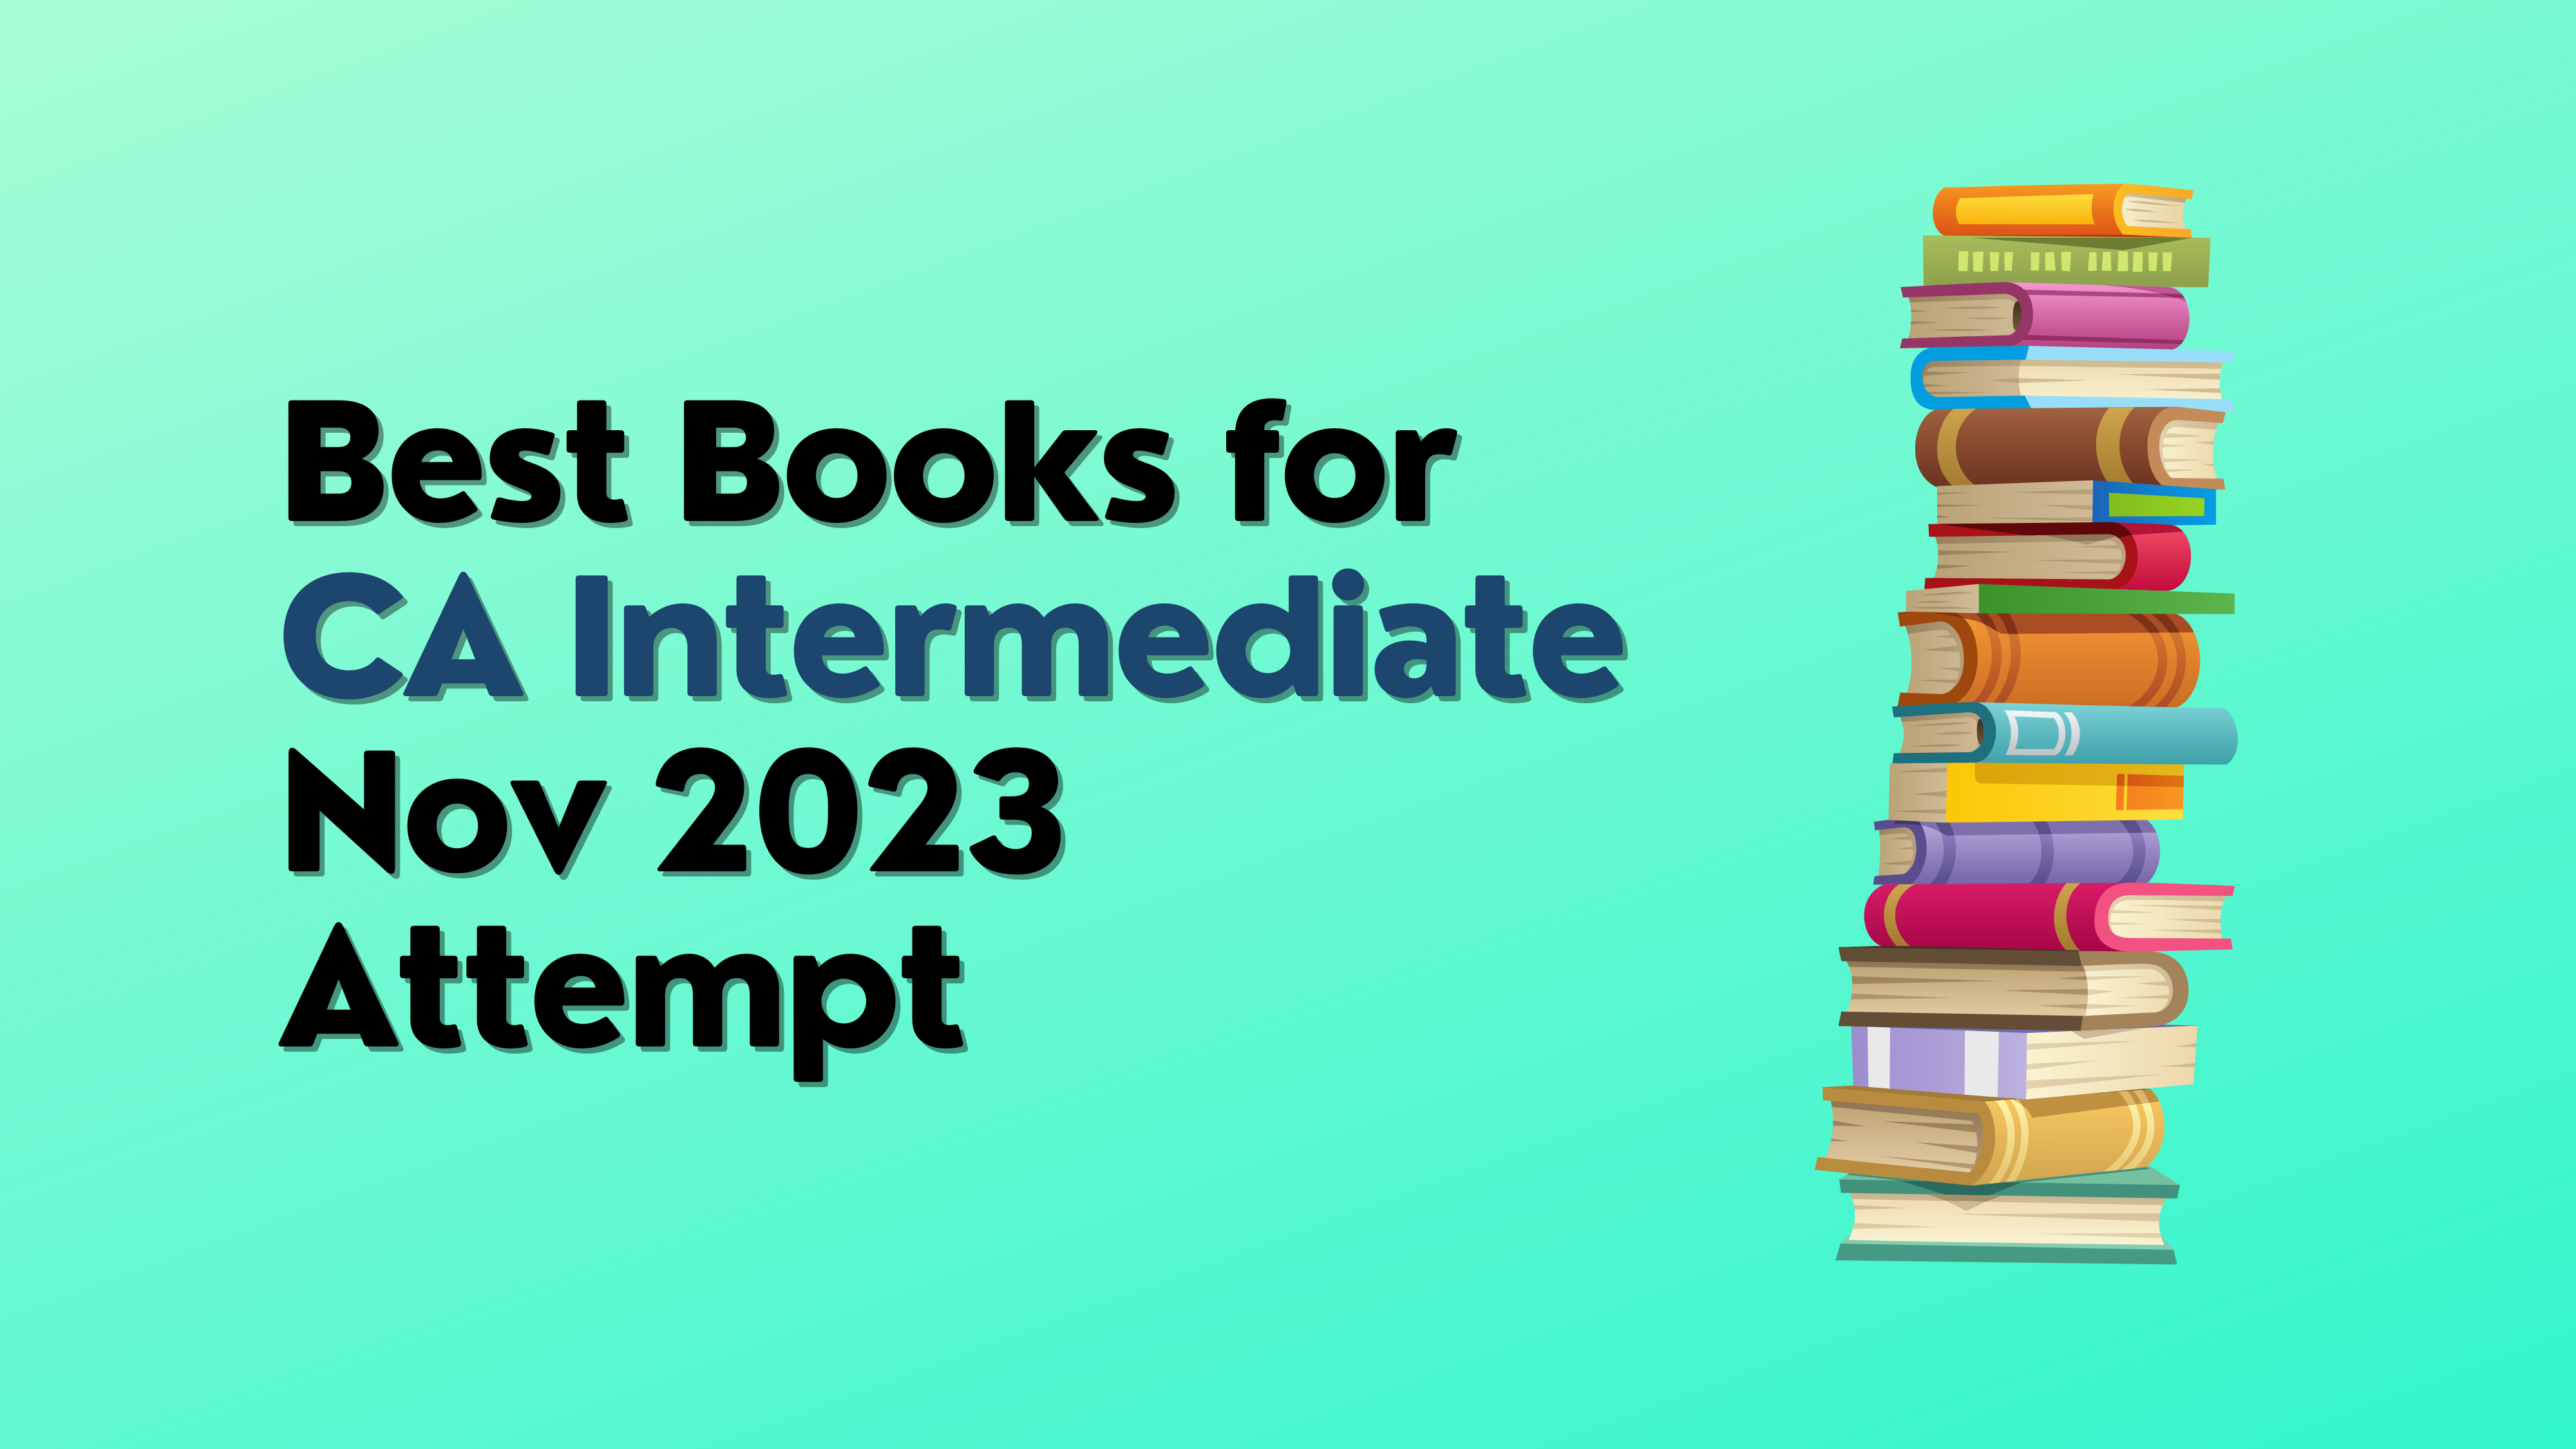 Best Books for CA Intermediate Nov 2023 Attempt